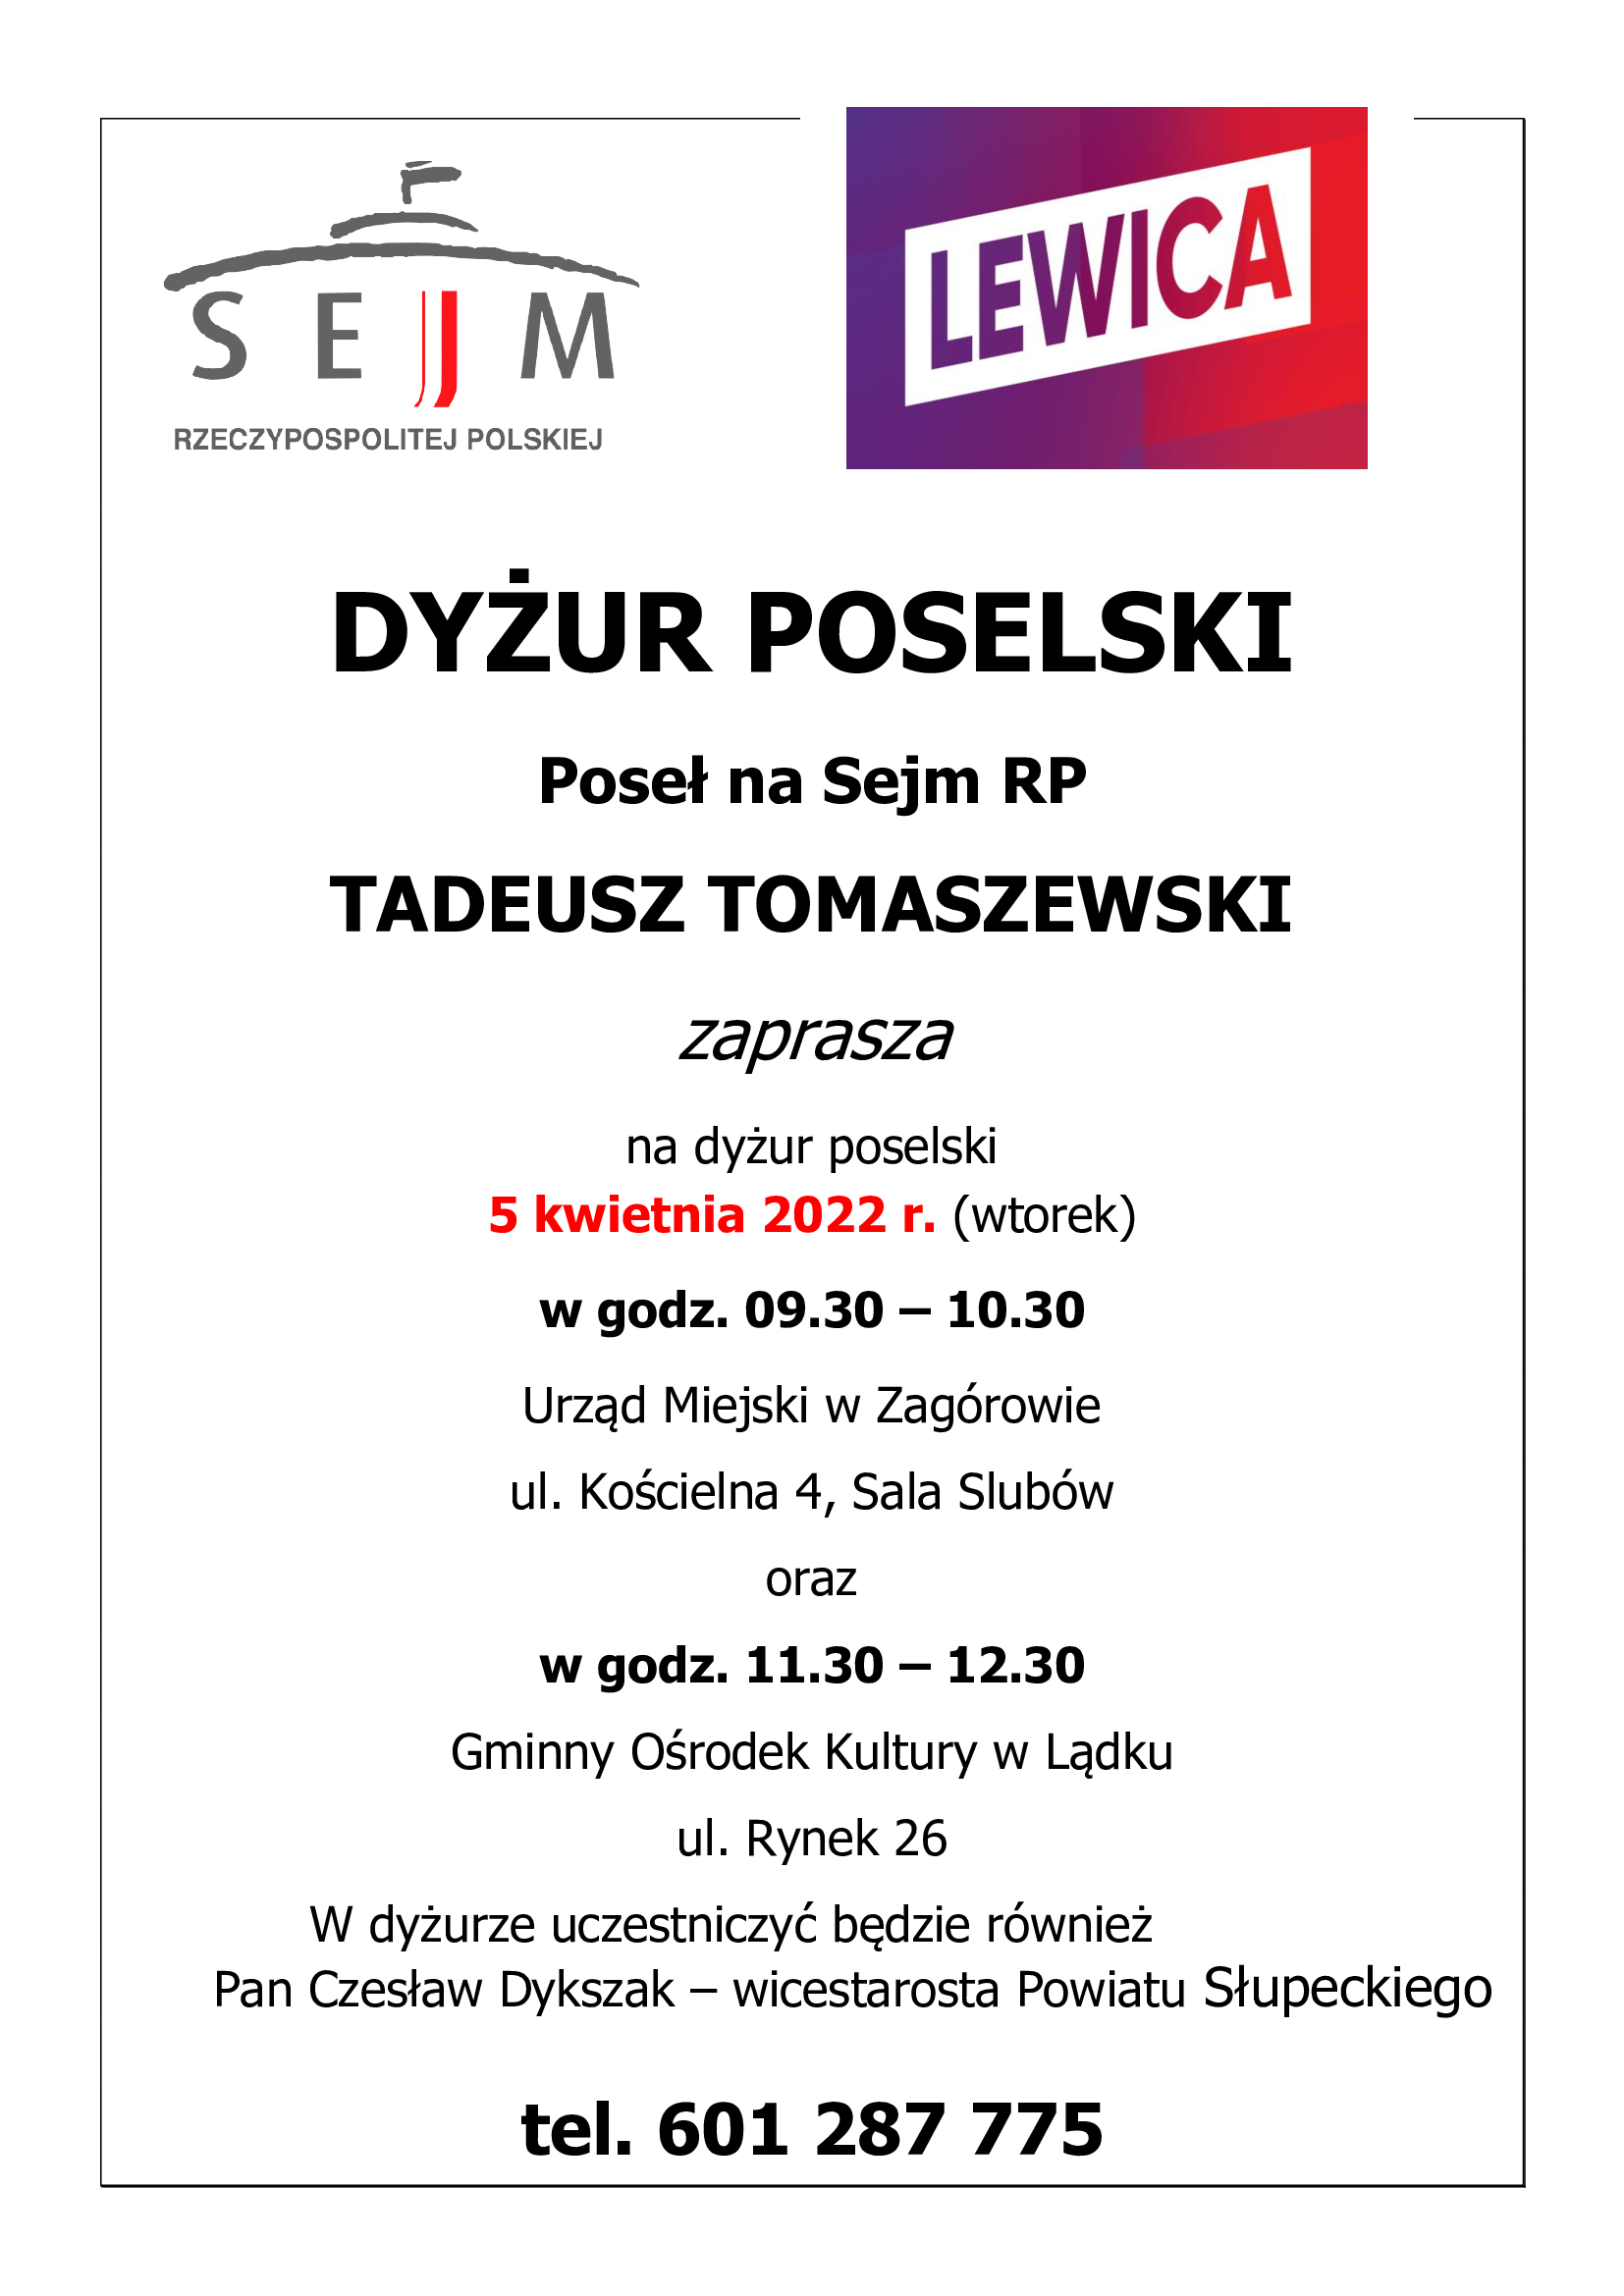 Plakat informujący o dyżurze poselskim posła na Sejm RP Tadeusza Tomaszewskiego, który odbędzie się 5 kwietnia od 9:30 do 10:30 w Urzędzie Miejskim w Zagórowie oraz od 11:30 do 12:30 w Gminnym Ośrodku Kultury w Lądku. W dyżurze uczestniczyć będzie również wicestarosta Powiatu Słupeckiego - Czesław Dykszak